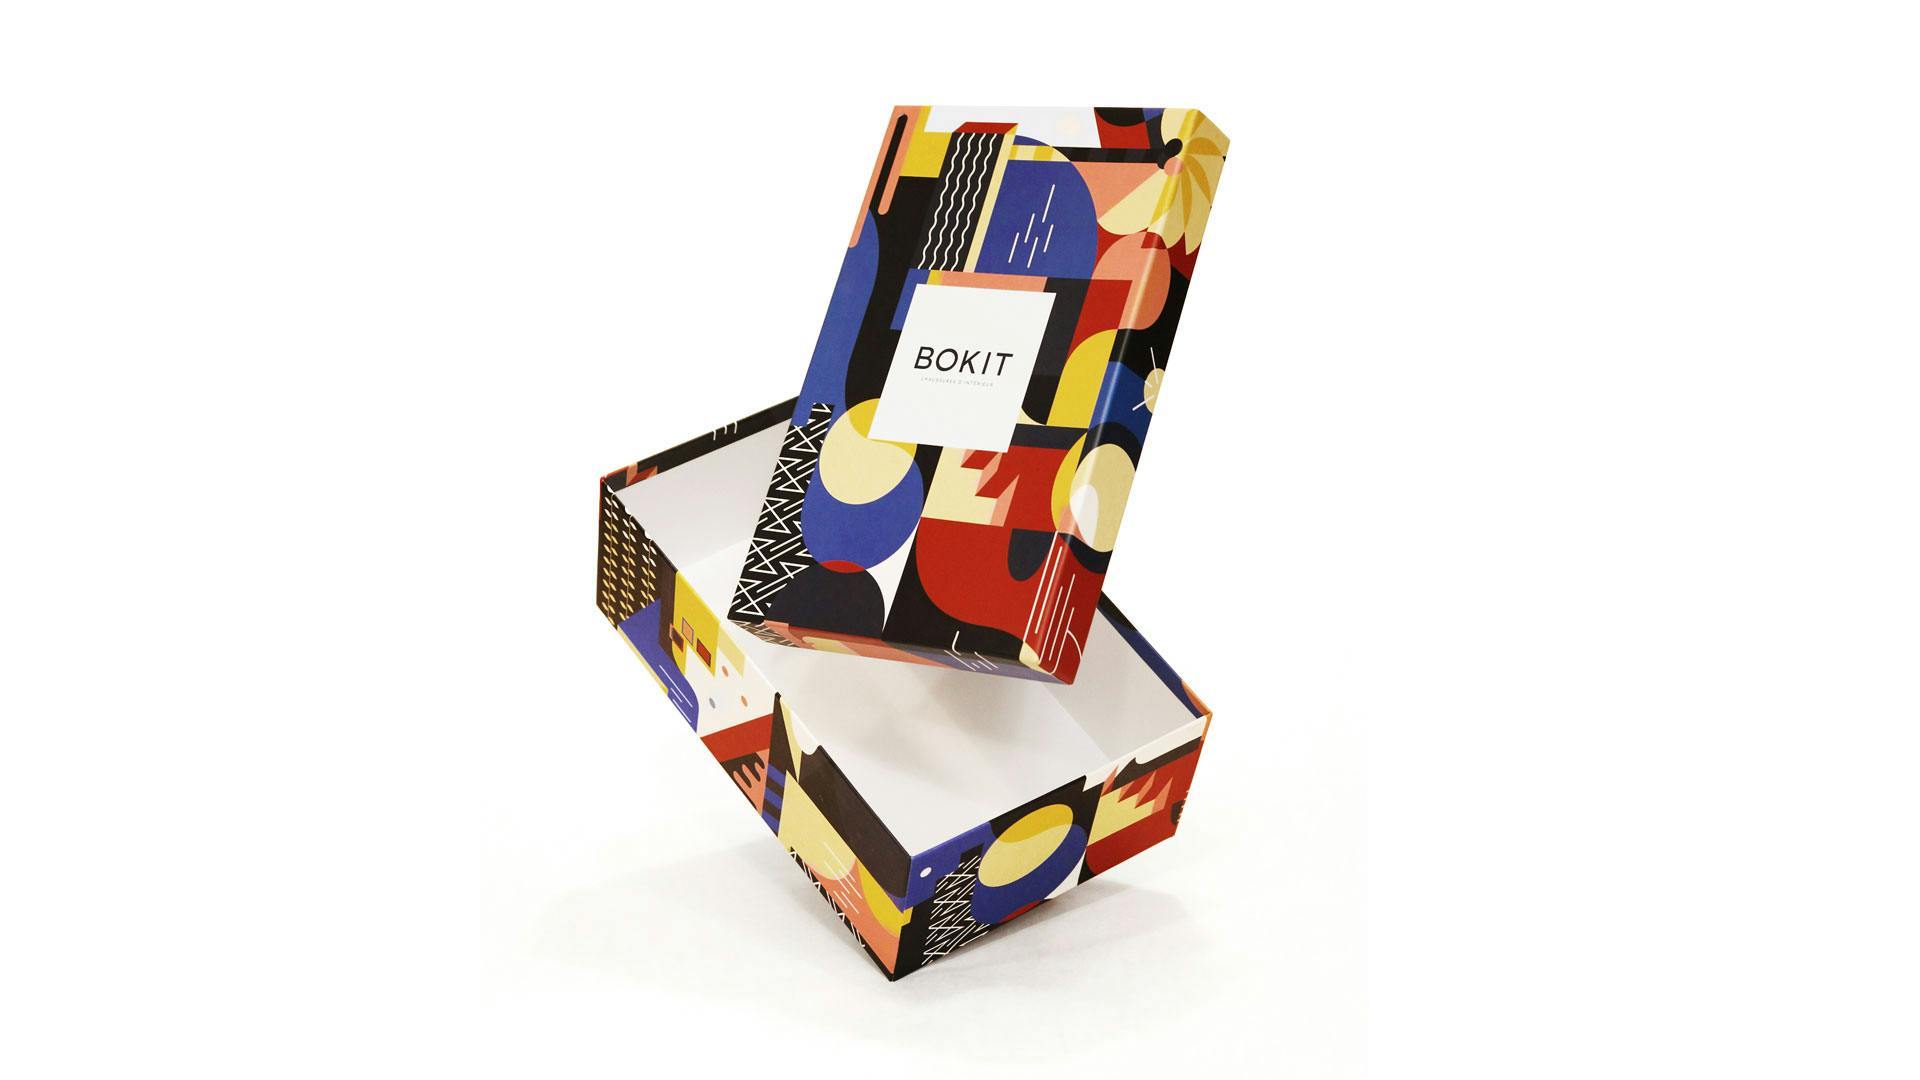 Le studio hekla réalise une boite à chaussure au pattern personnalisé pour la marque de chaussure bordelaise Bokit